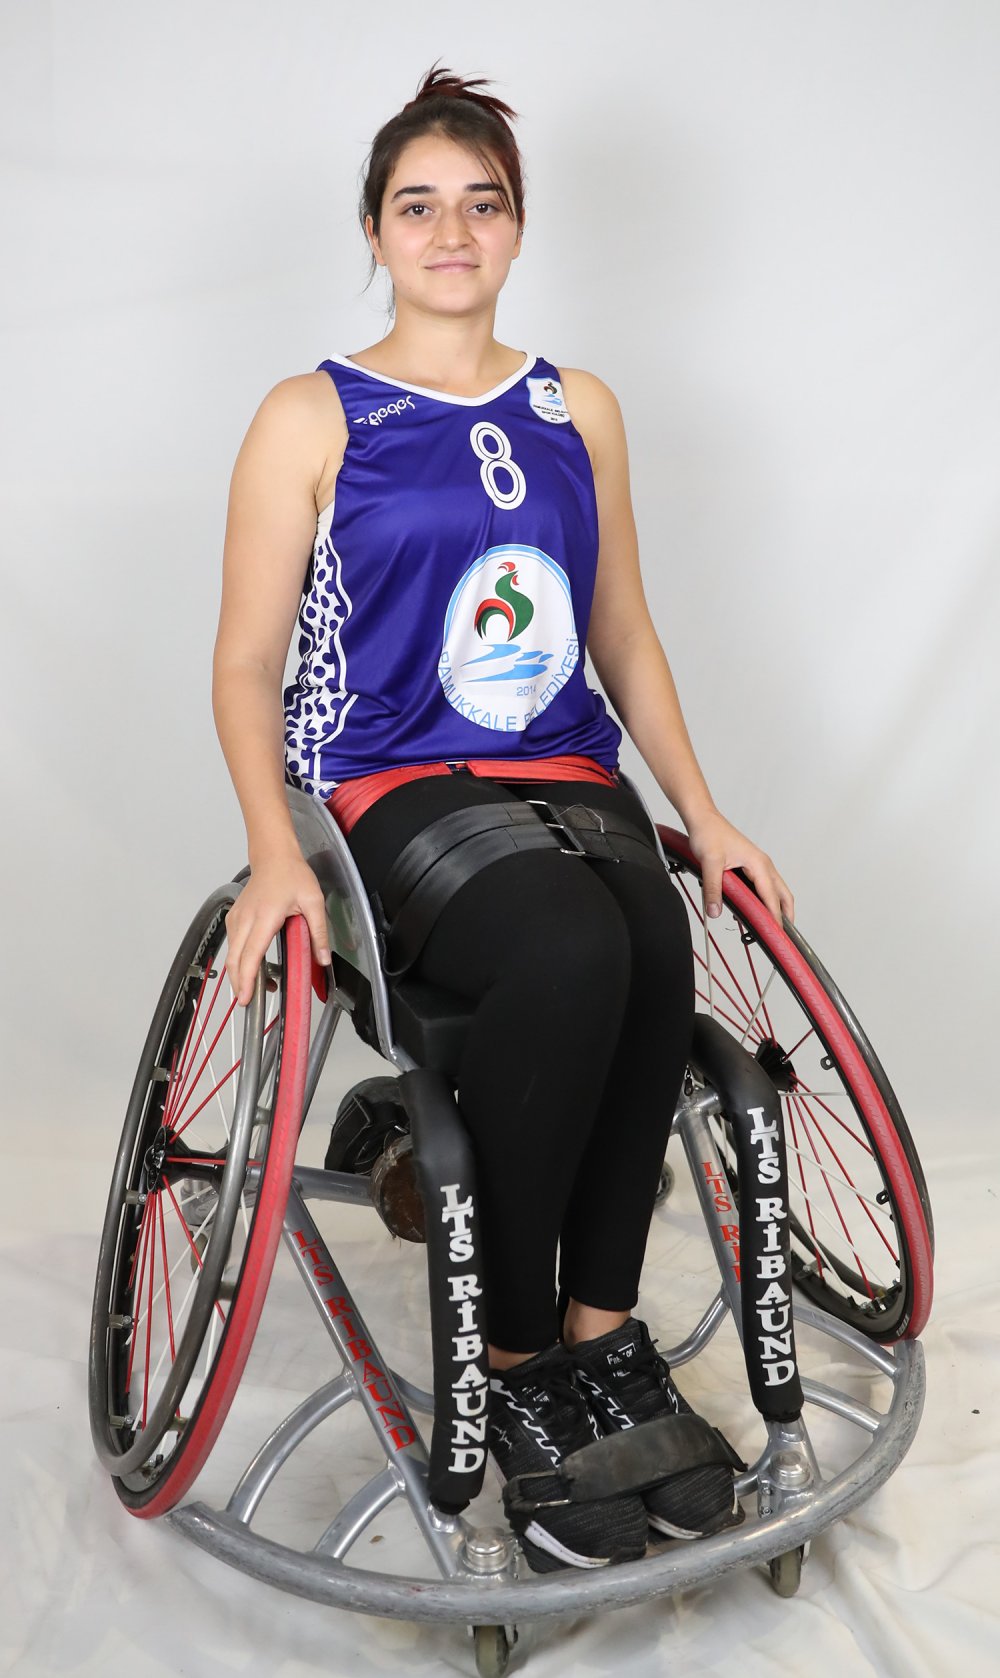 Pamukkale Belediye Spor Kulübü’nün tekerlekli sandalye basketbol takımında görev yapan Meryem Tan, Tekerlekli Sandalye Kadınlar A Milli Takım ile birlikte İspanya’nın başkenti Madrid’de düzenlenecek olan Avrupa Şampiyonası’na katılacak. 